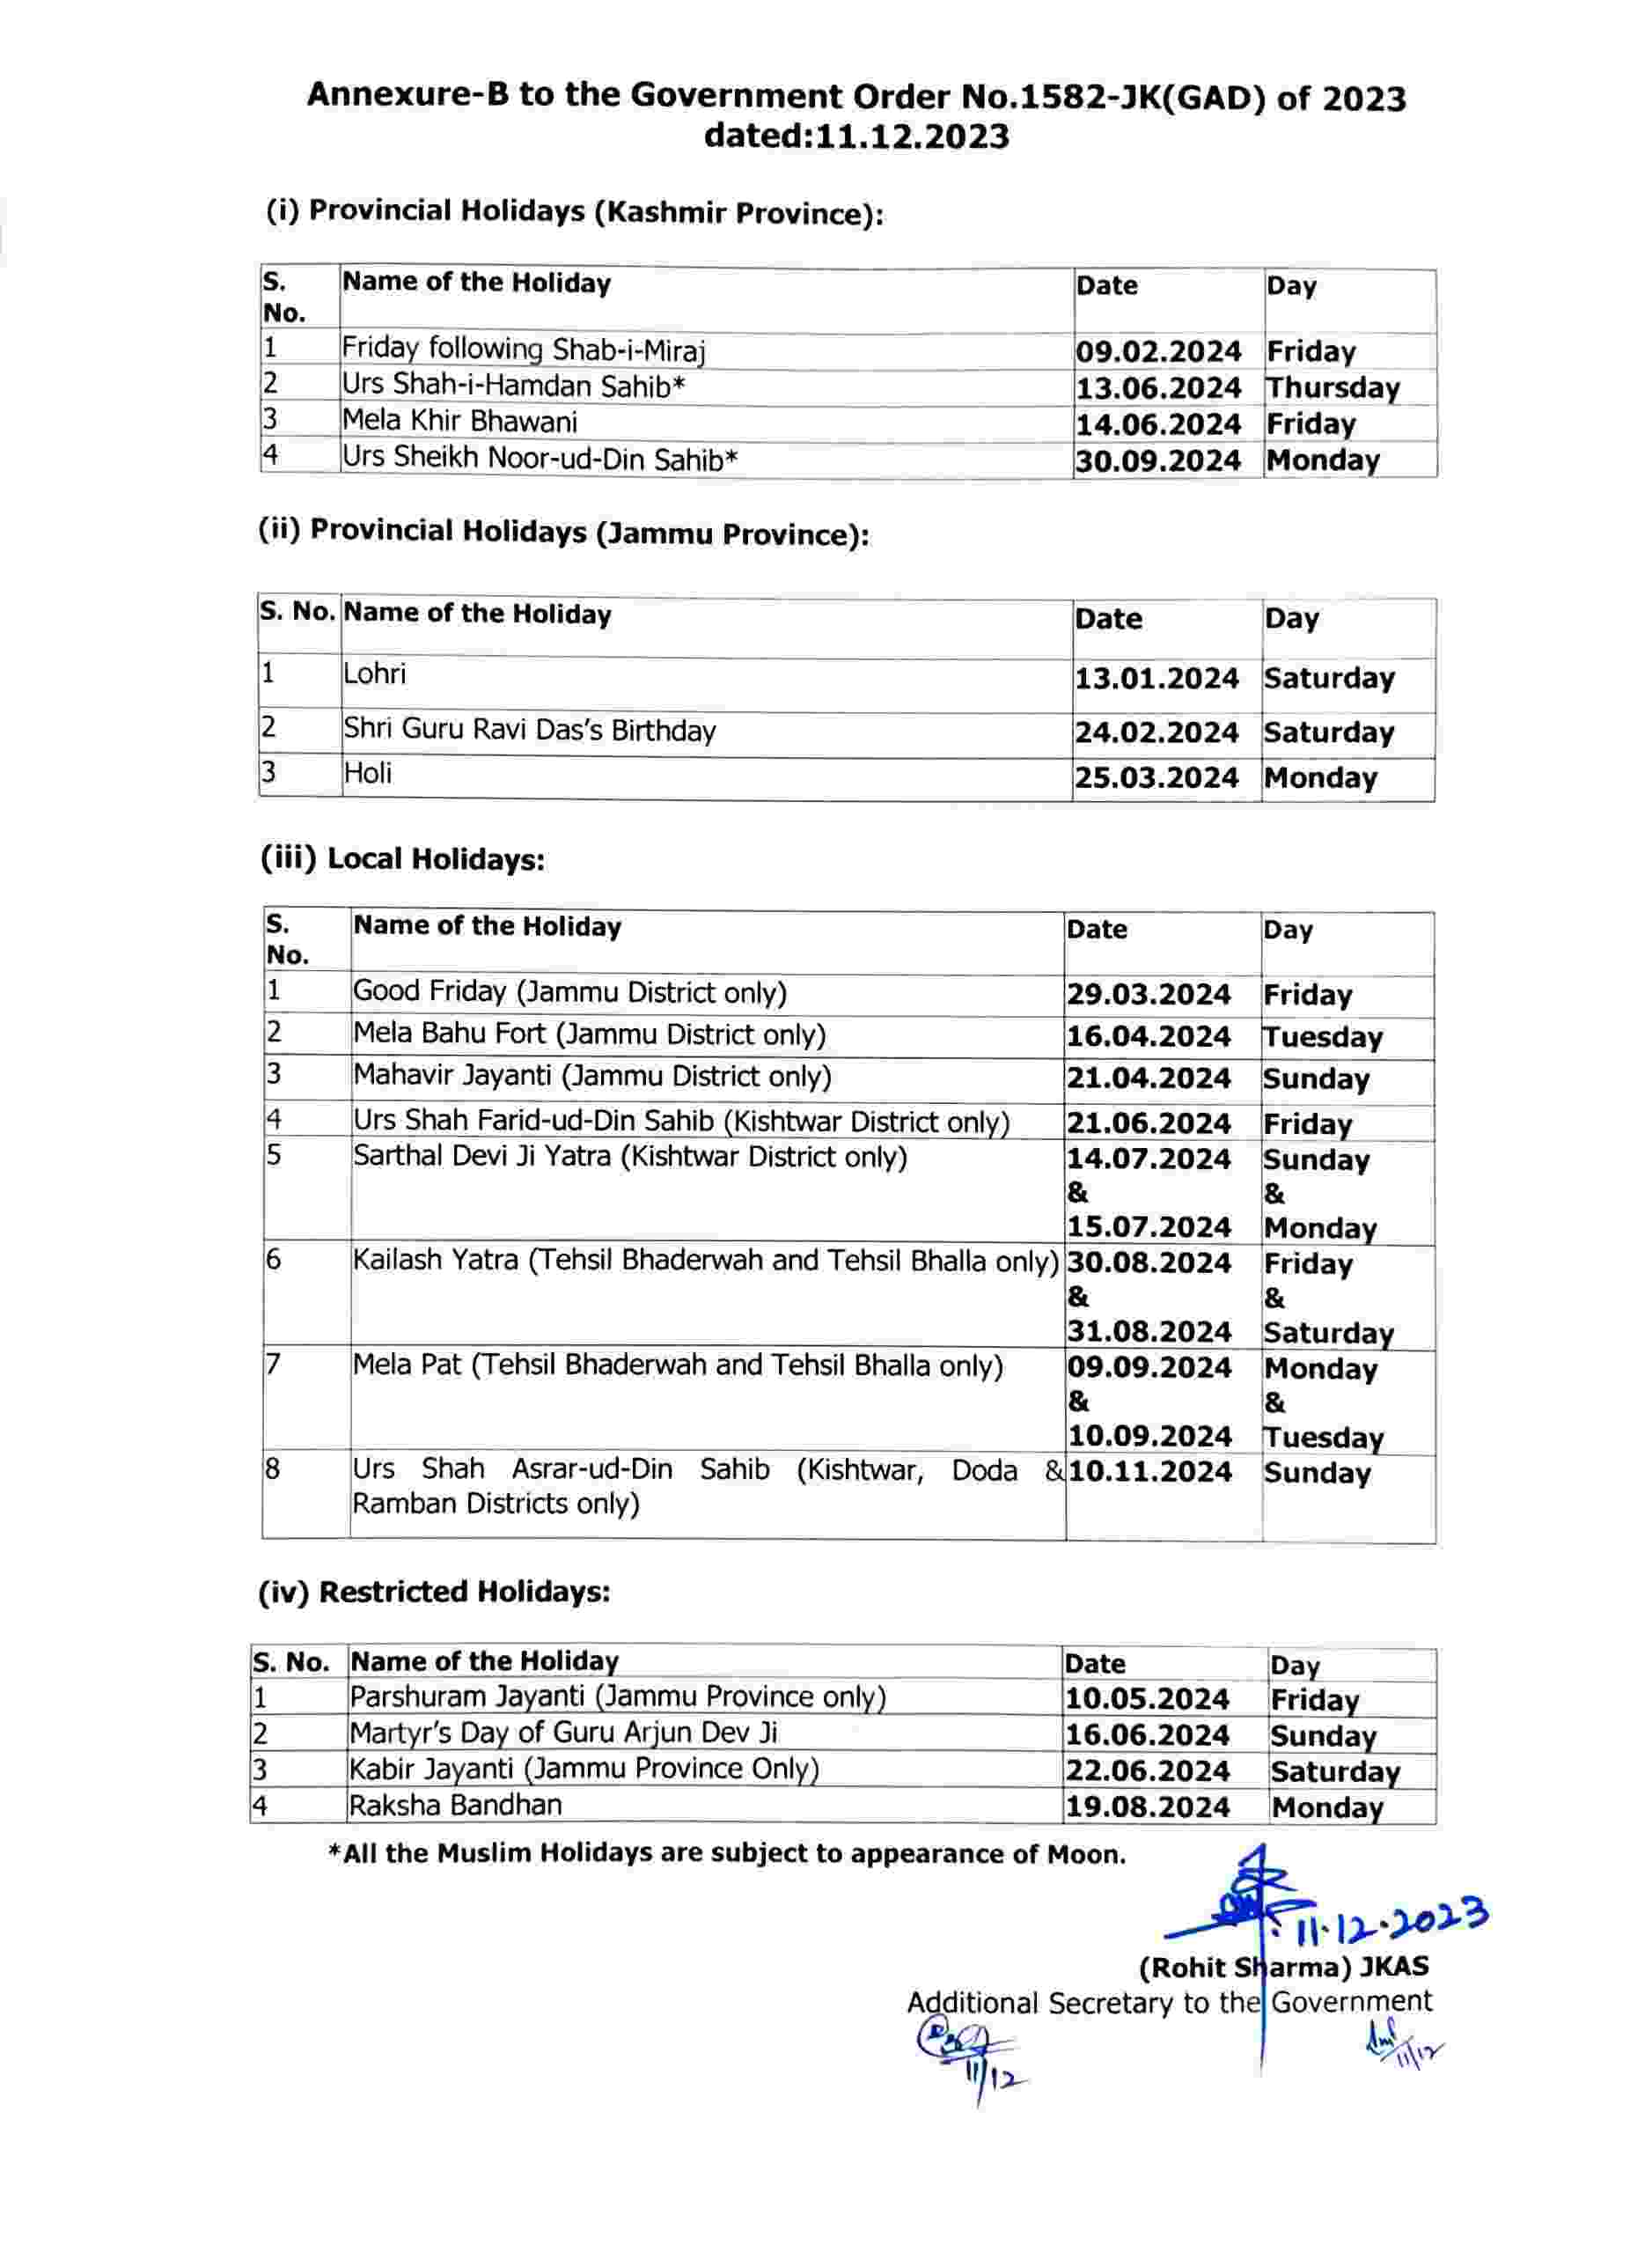 List of Holidays in 2024 Jammu Kashmir Holidays Calendar 2024